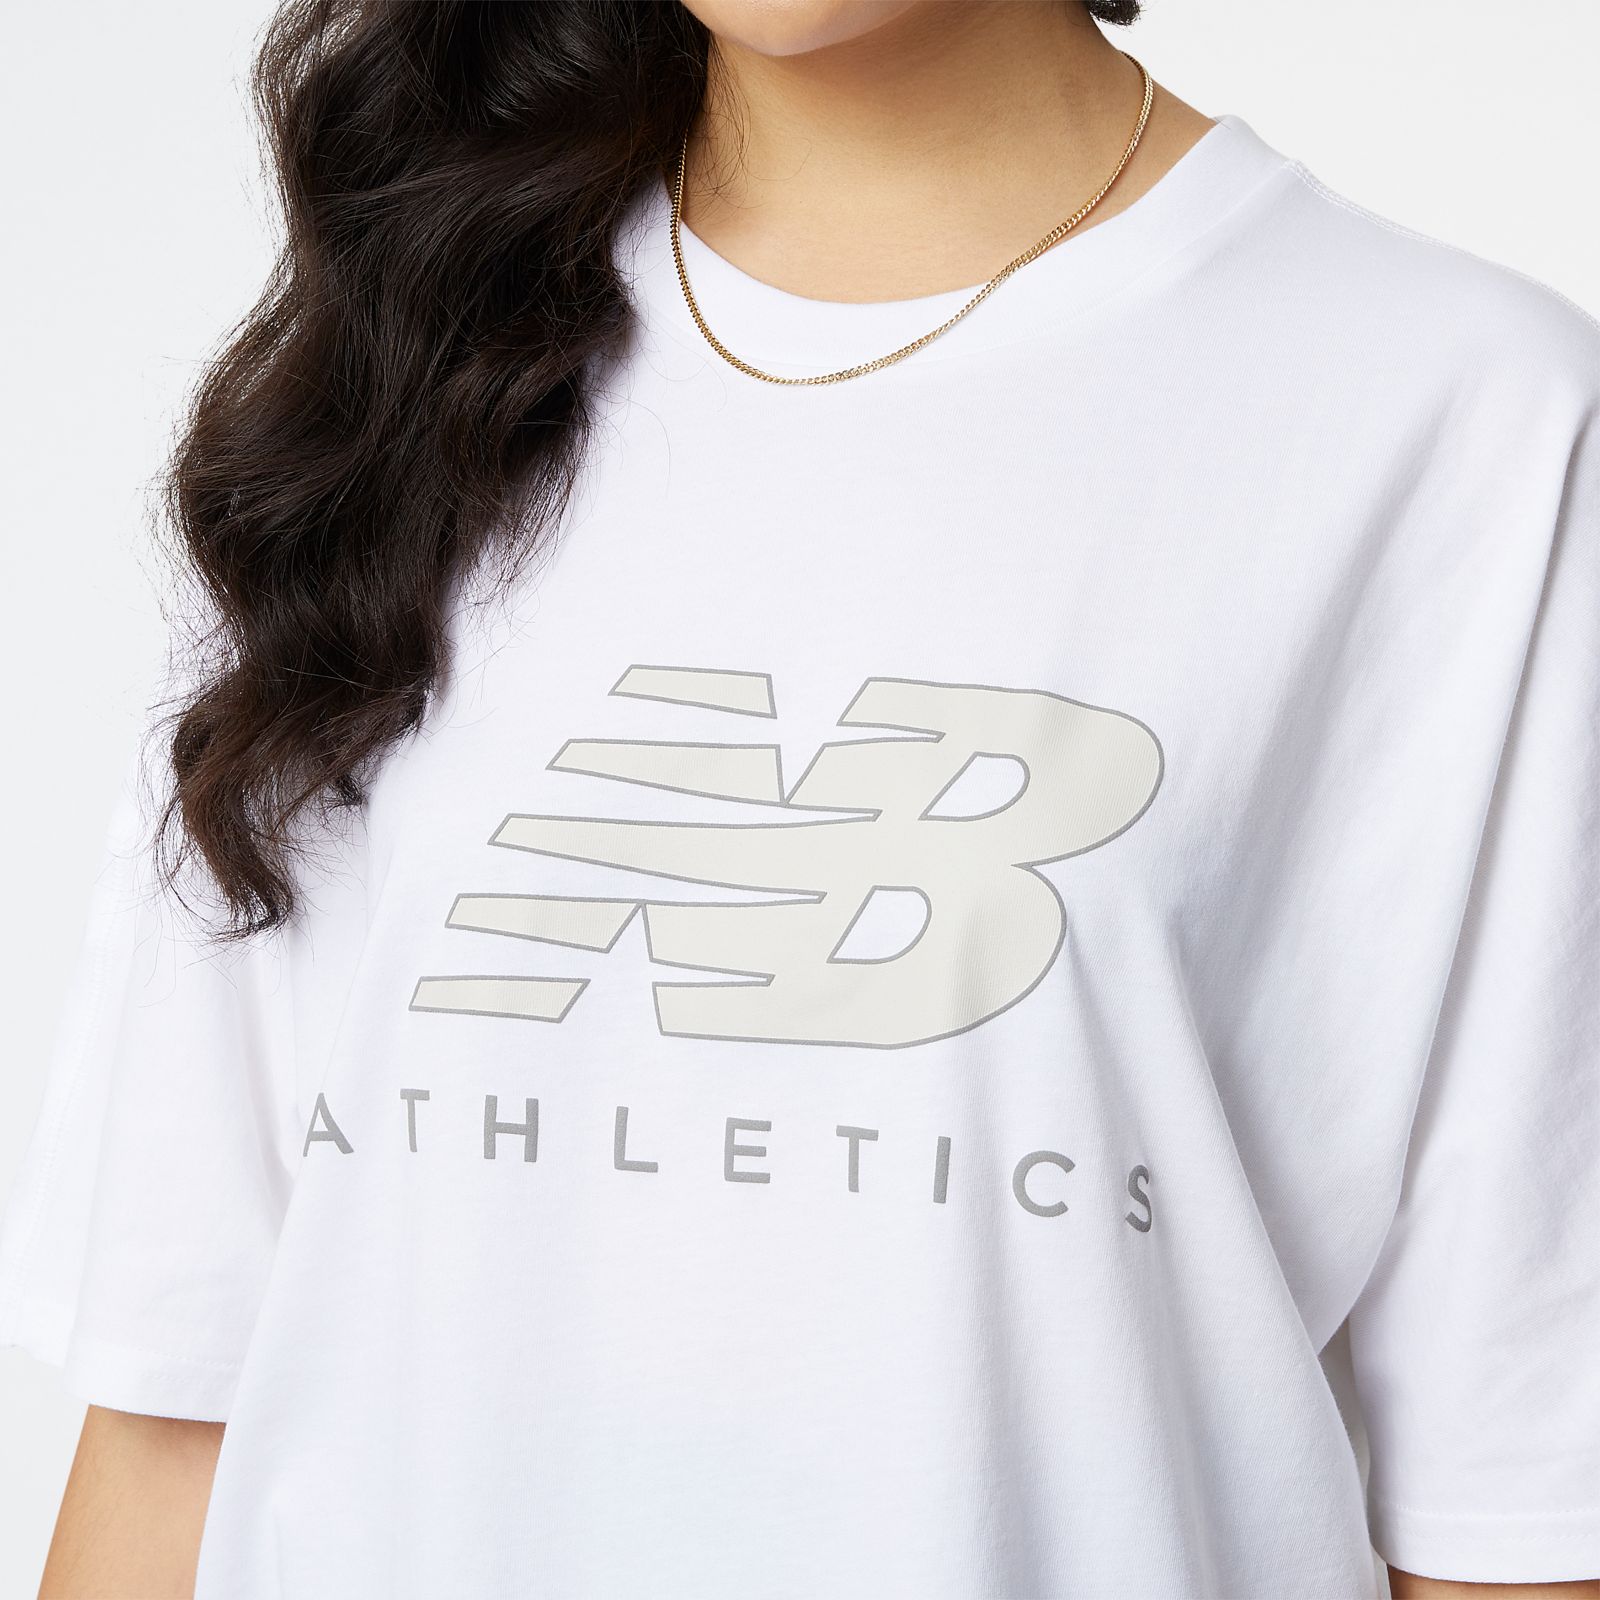 New Balance Womens Athletics Oversized T-shirt - White